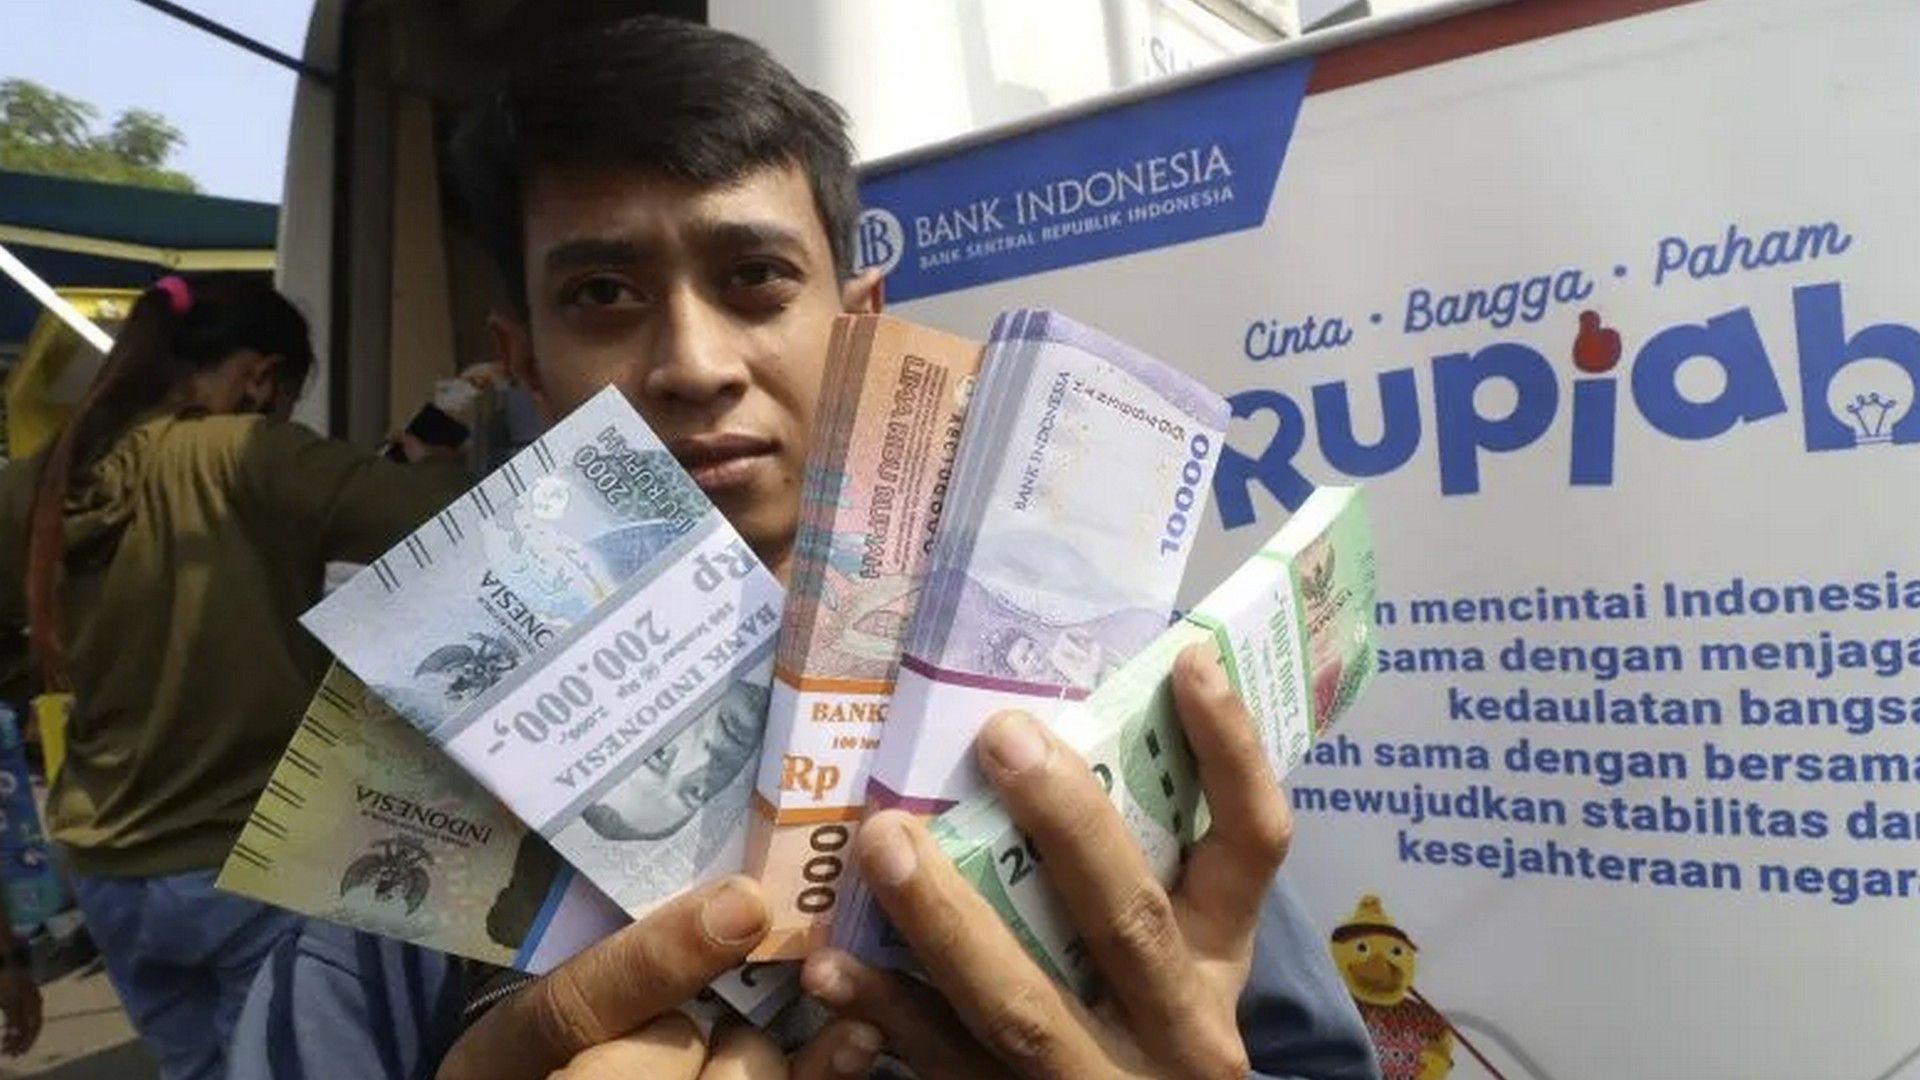 Ilustrasi - Warga memperlihatkan uang baru tahun emisi 2022 saat penukaran uang pada mobil kas keliling Bank Indonesia di GOR Jayabaya, Kota Kediri, Jawa Timur, Sabtu (25/3/2023). ANTARA FOTO/Prasetia Fauzani/rwa.